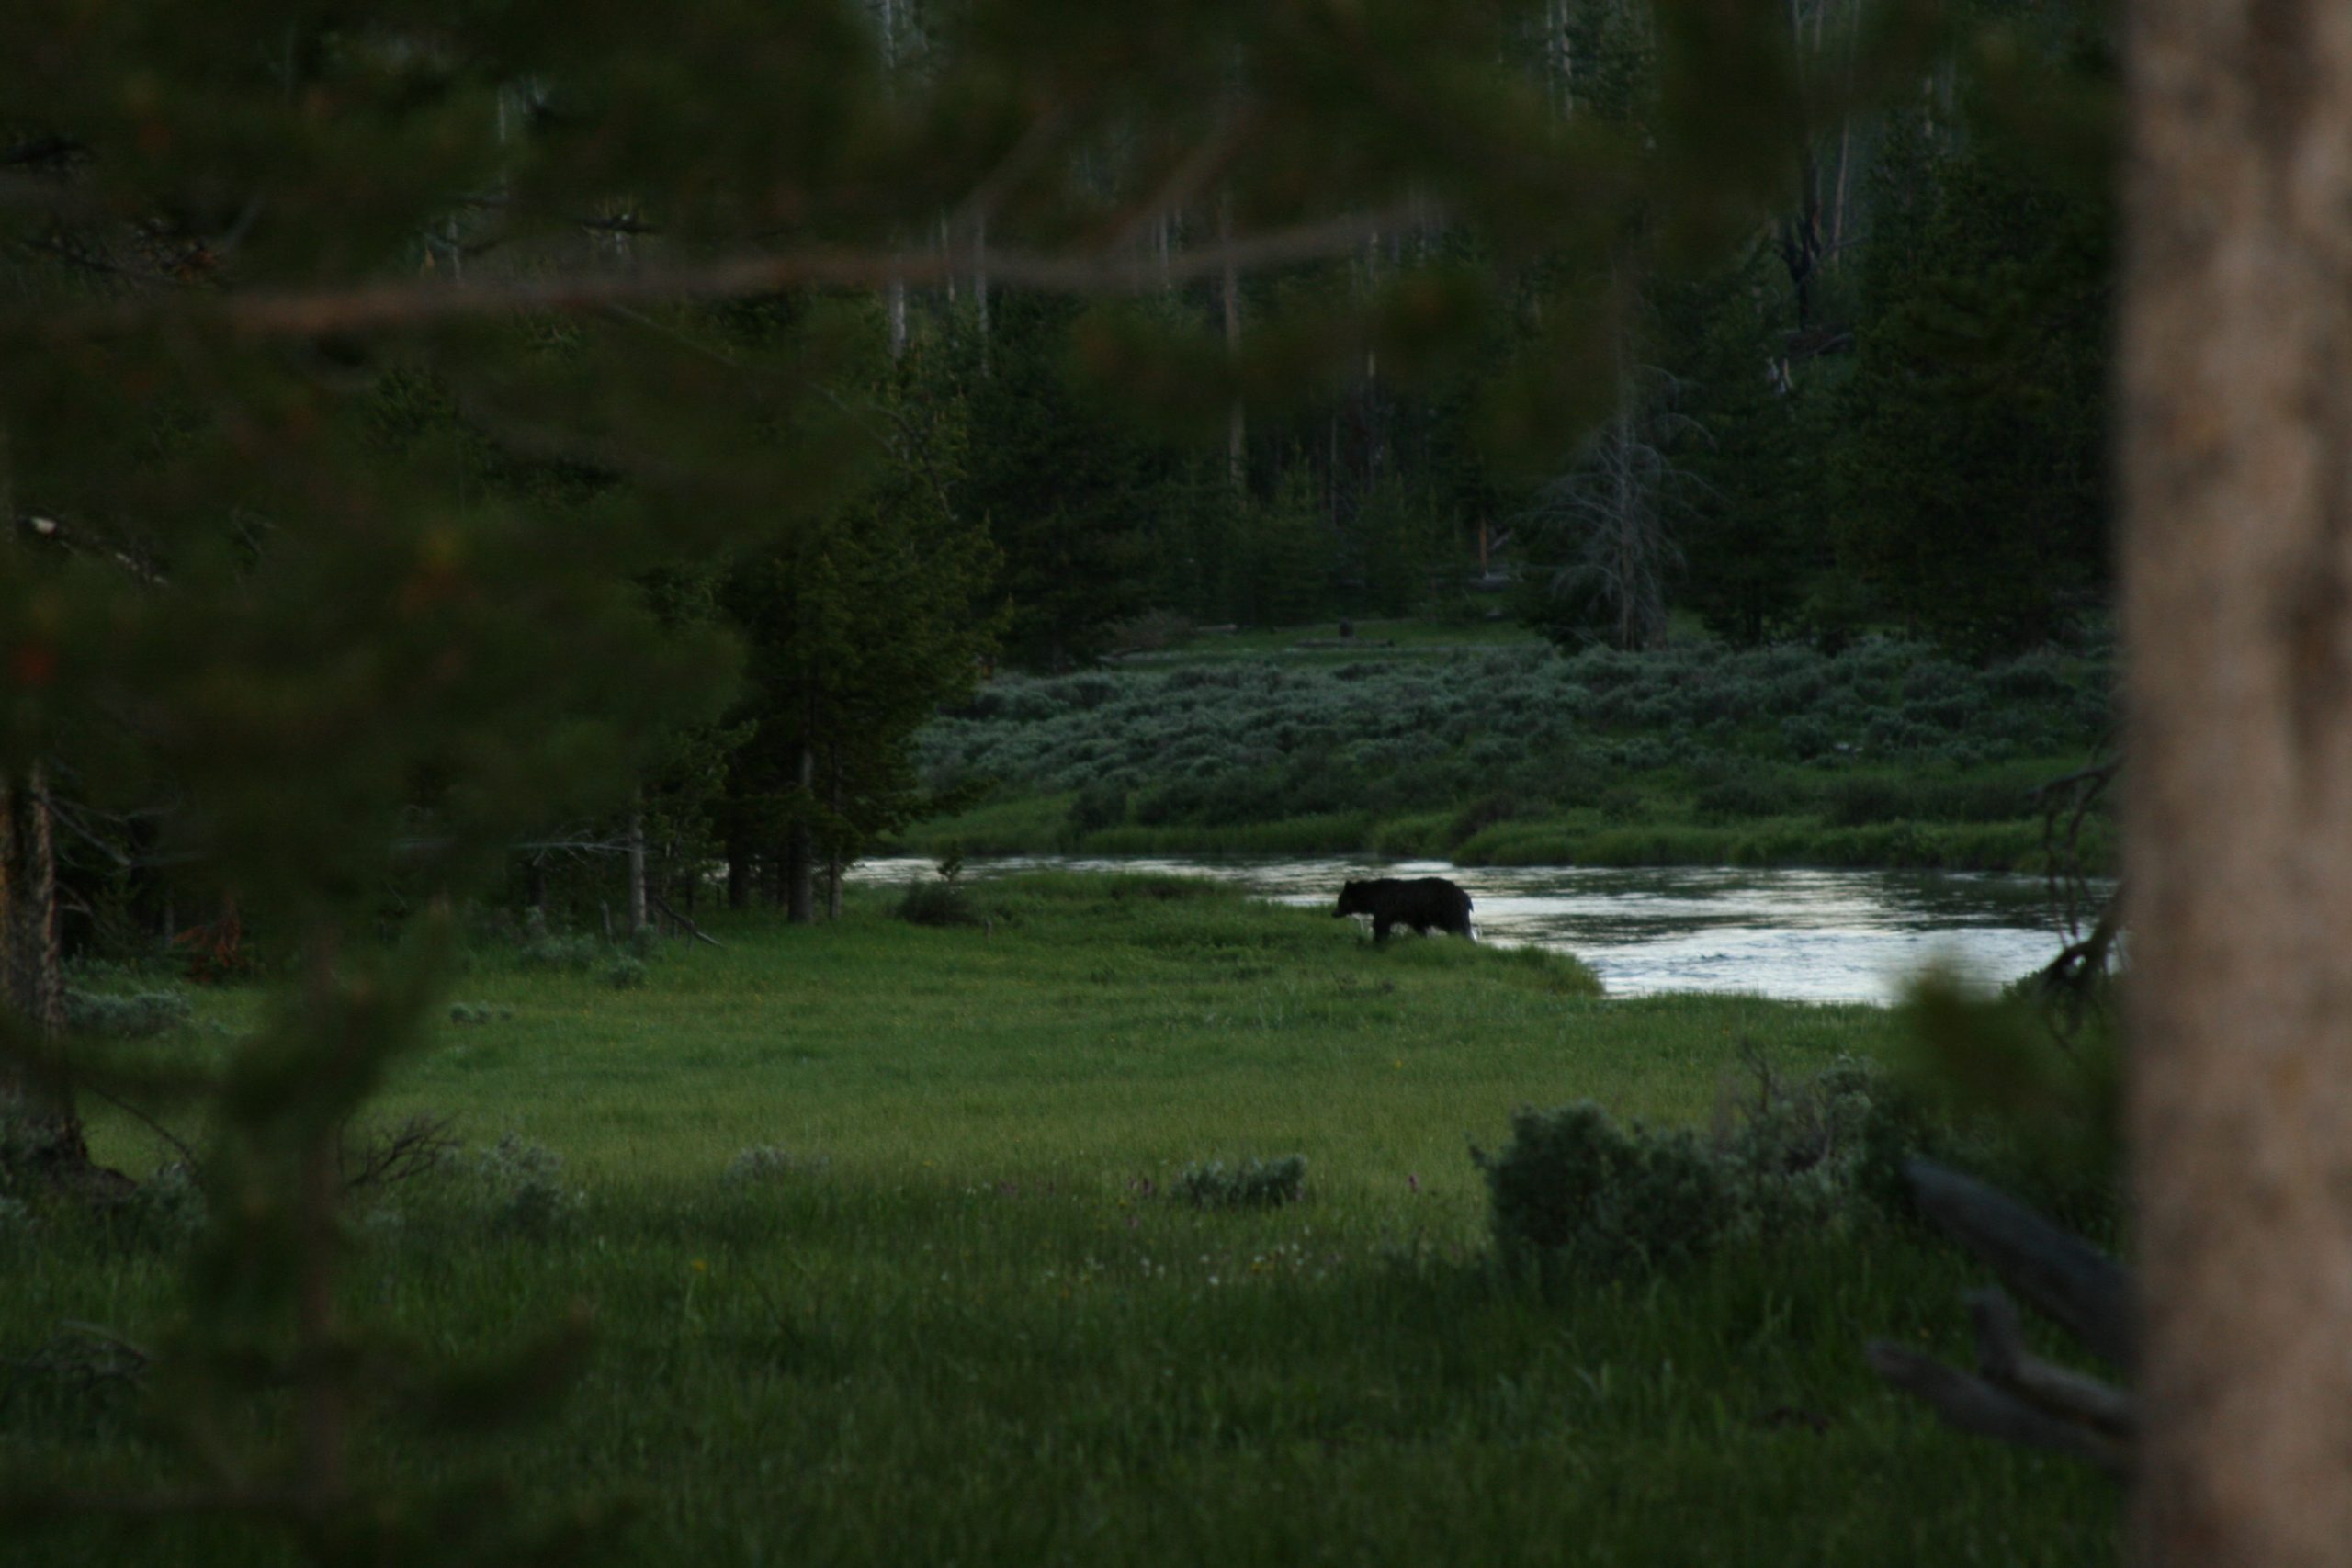 Bear in Yellowstone